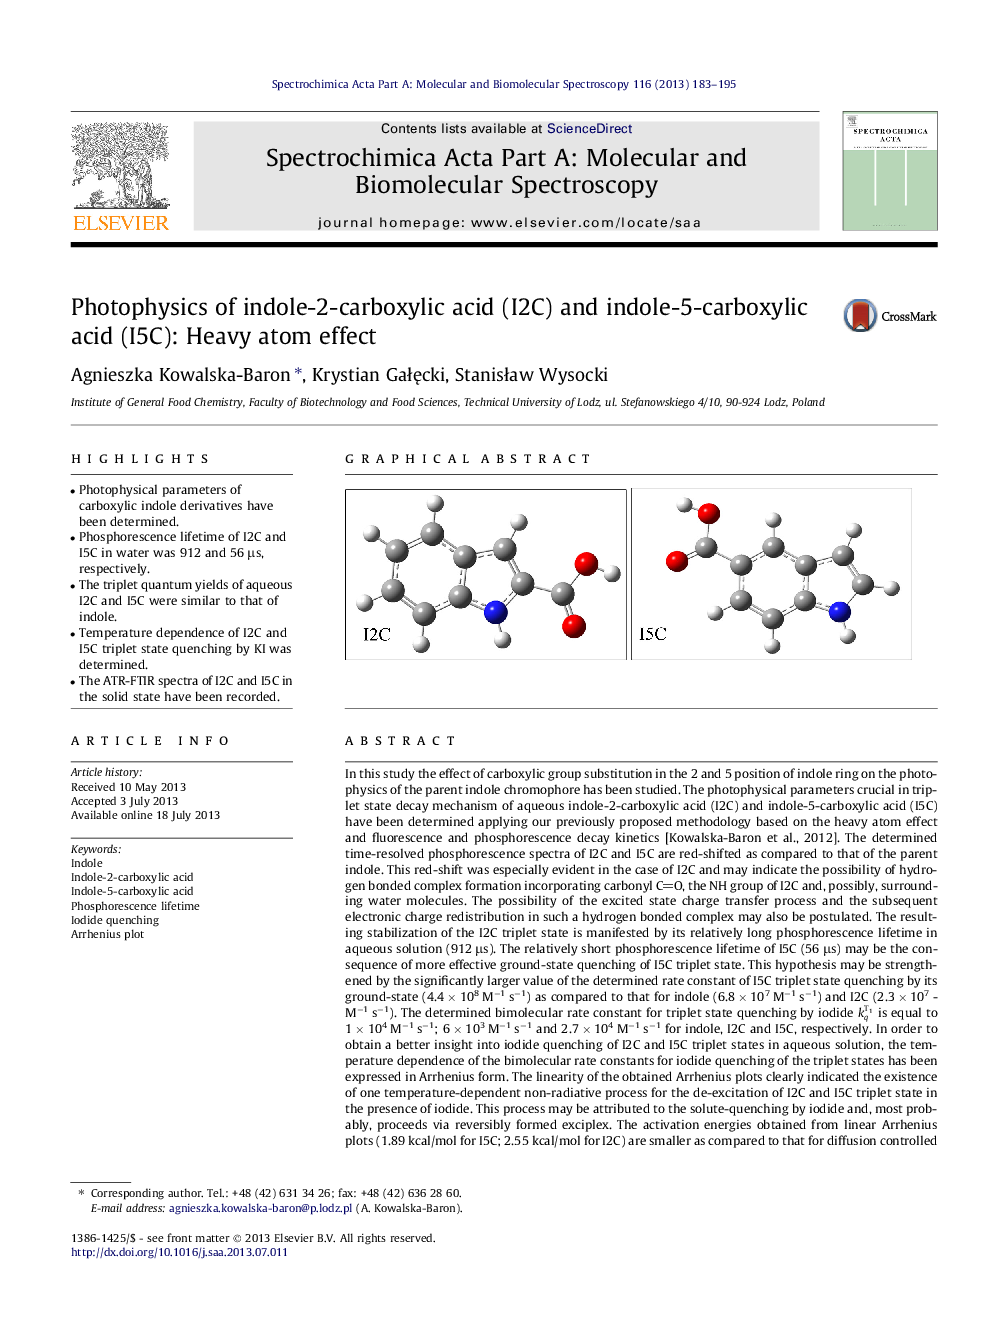 Photophysics of indole-2-carboxylic acid (I2C) and indole-5-carboxylic acid (I5C): Heavy atom effect